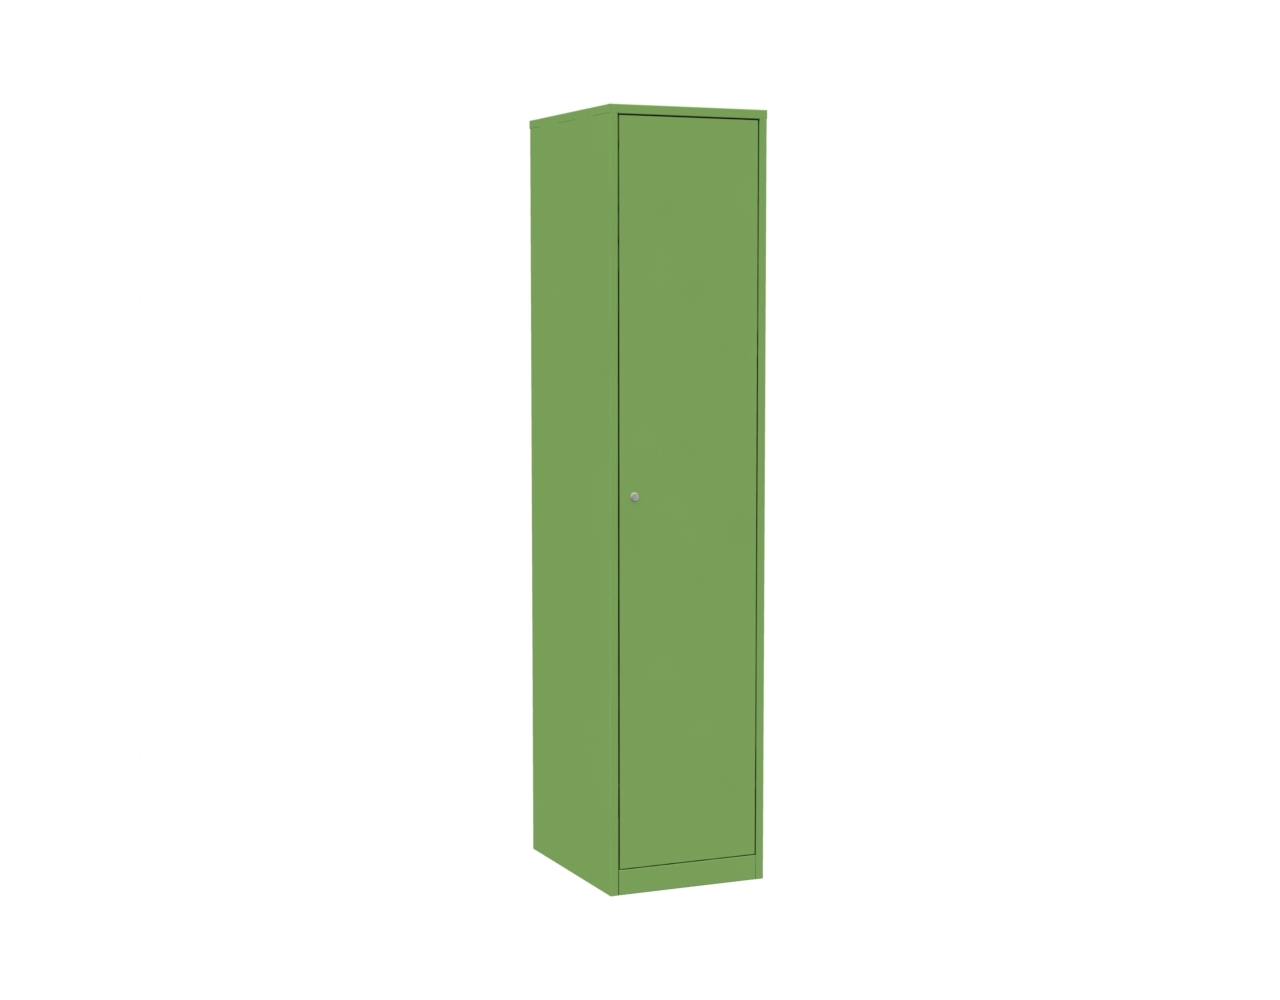 Шкаф для хранения спецодежды и инвентаря ШРВ-ОД-400 зеленый